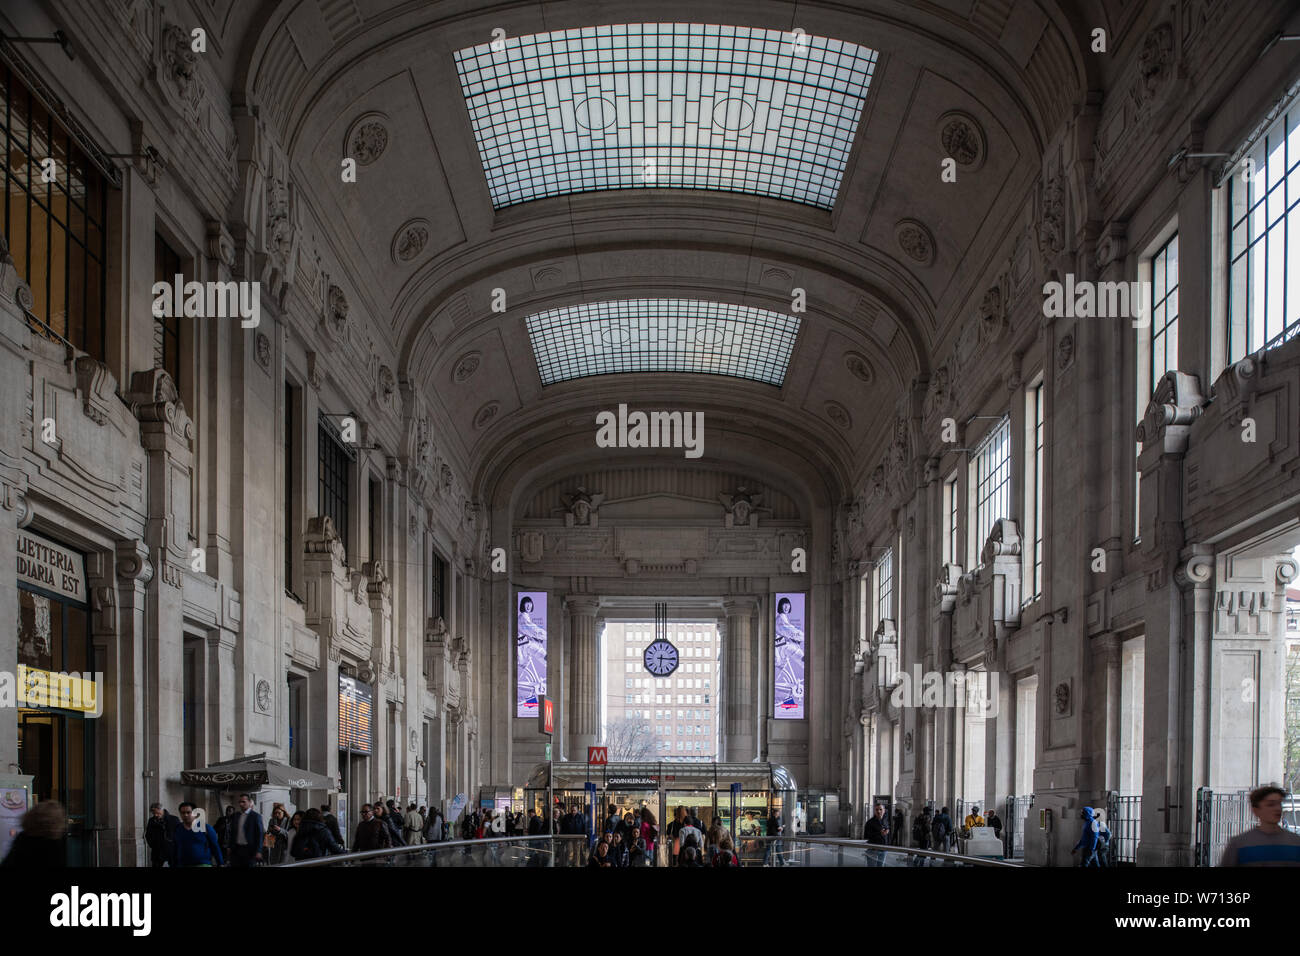 Milano, Italia - 30 Giugno 2019: Vista della Stazione Centrale - Stazione Centrale Foto Stock